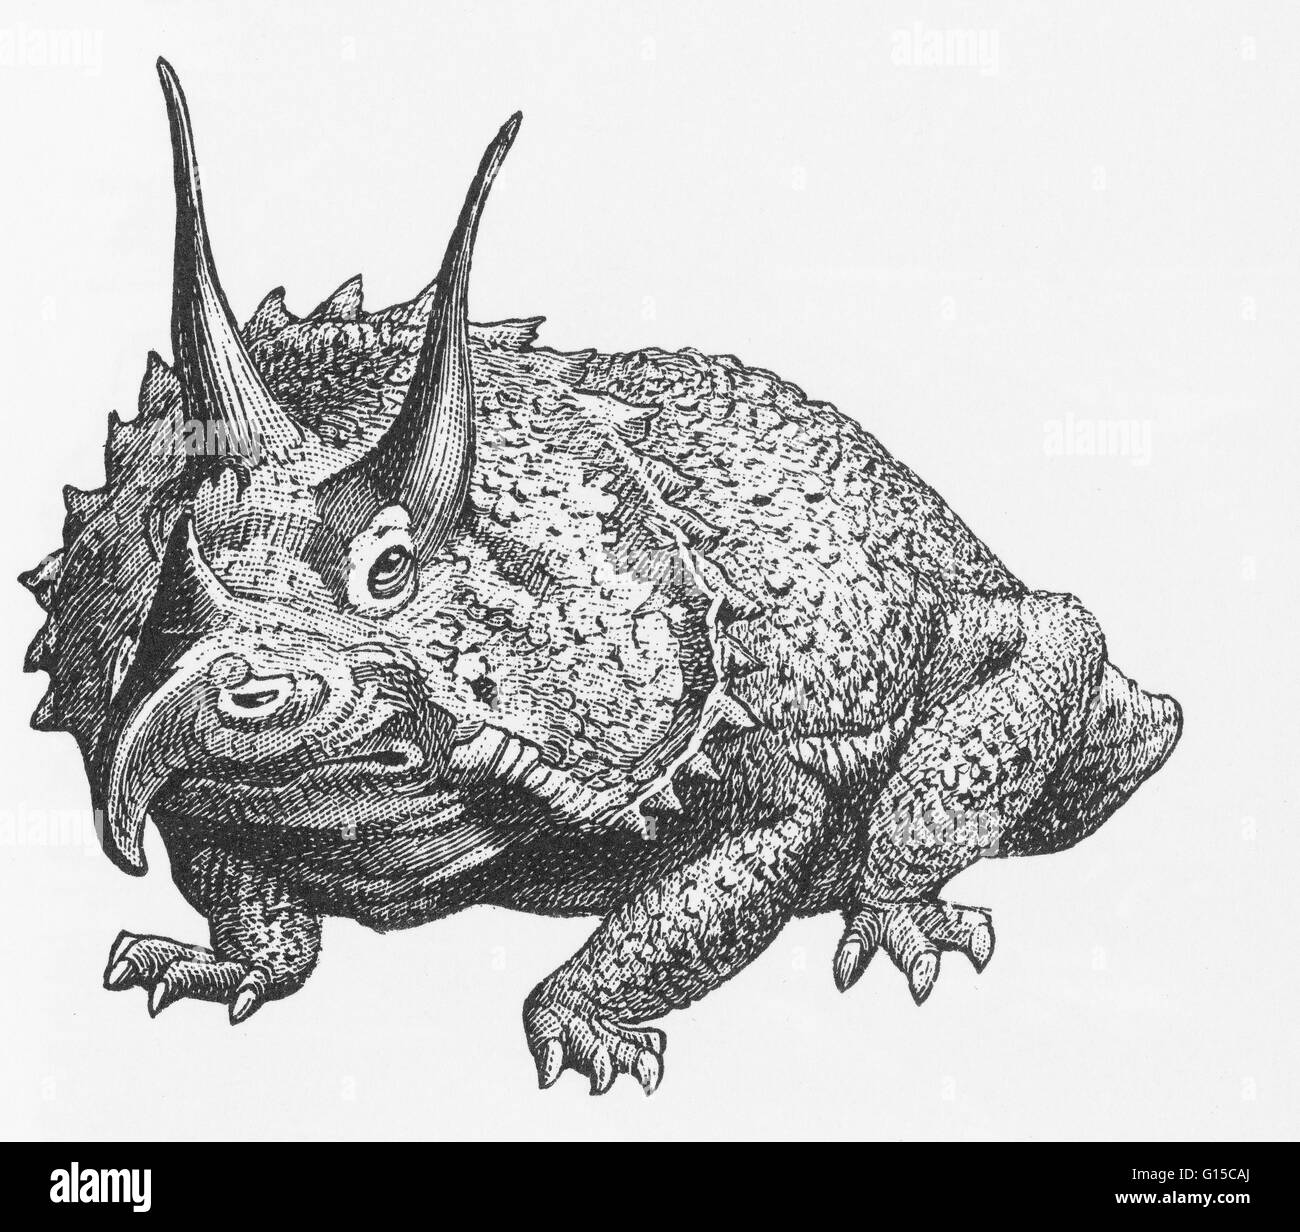 Illustration d'un triceratops. Banque D'Images